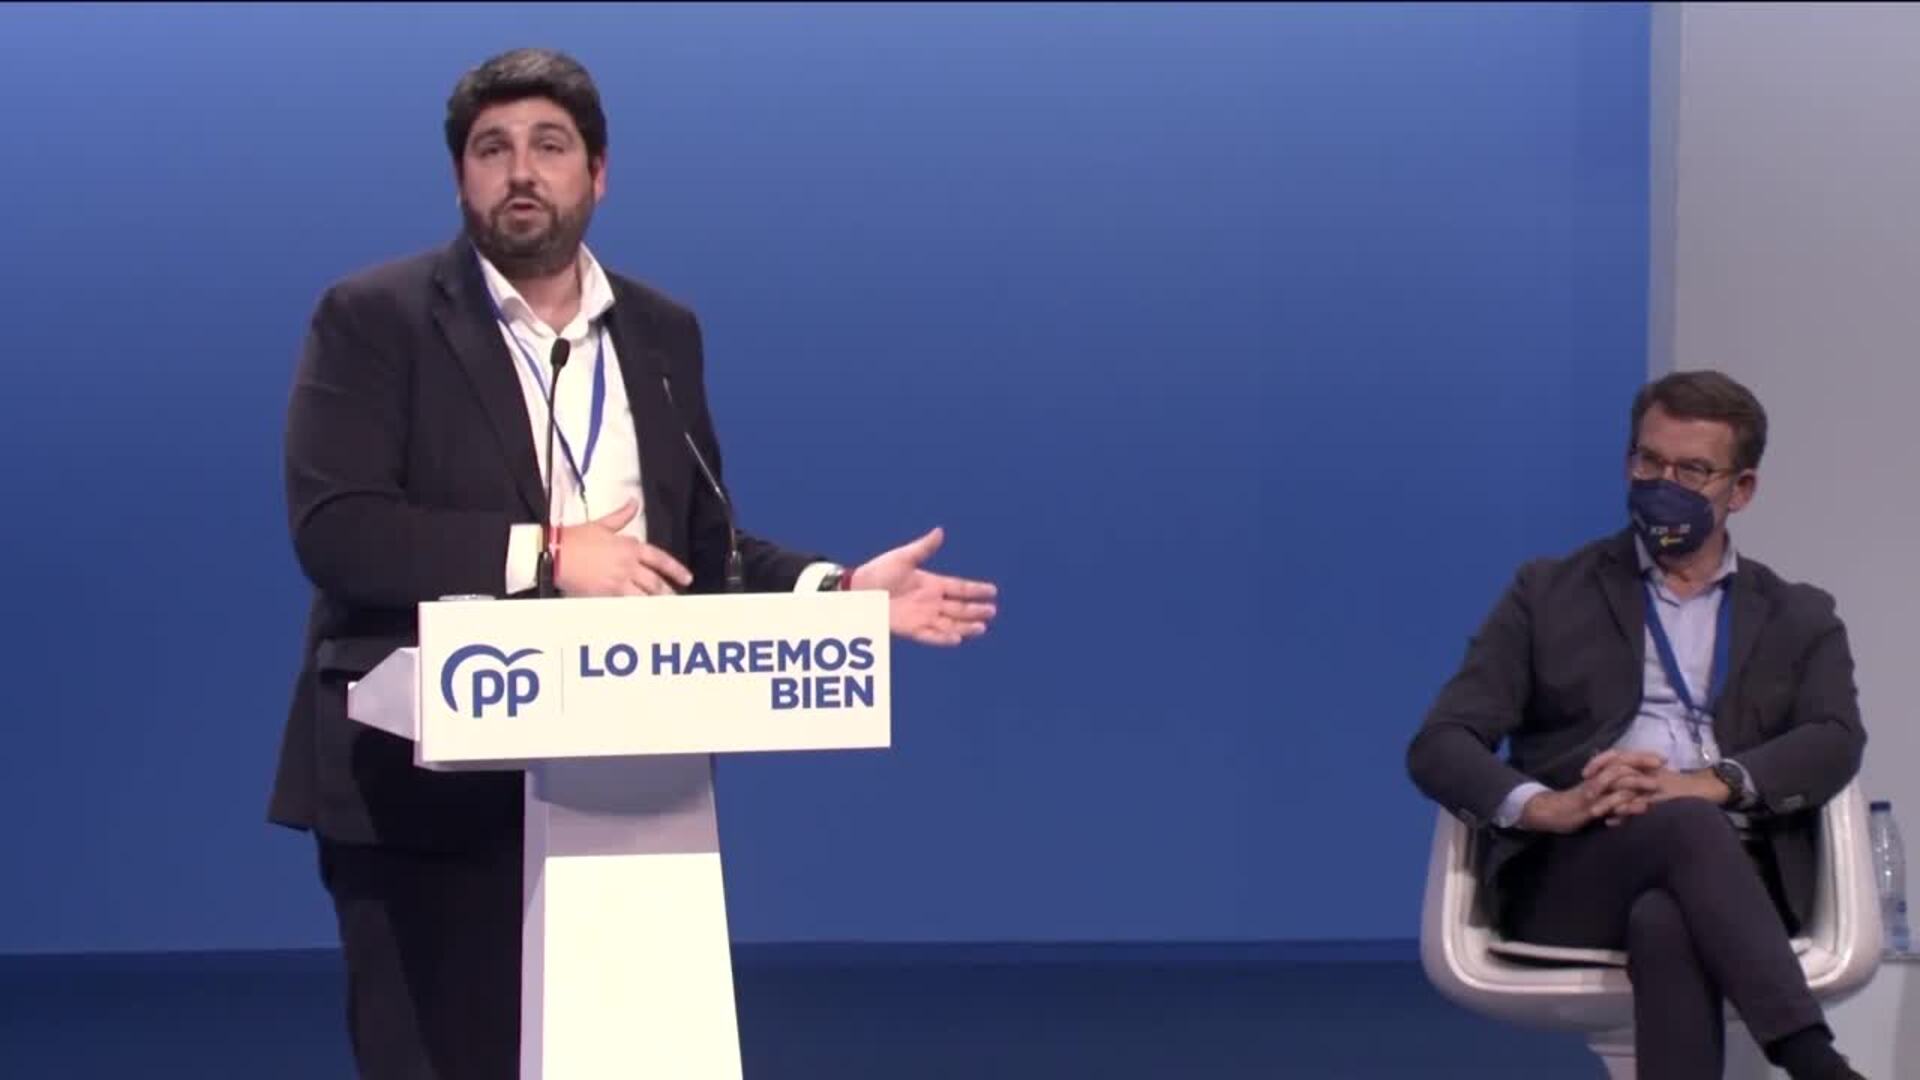 López Miras ve a PP "preparado" para derrotar política "inmadura" de la izquierda